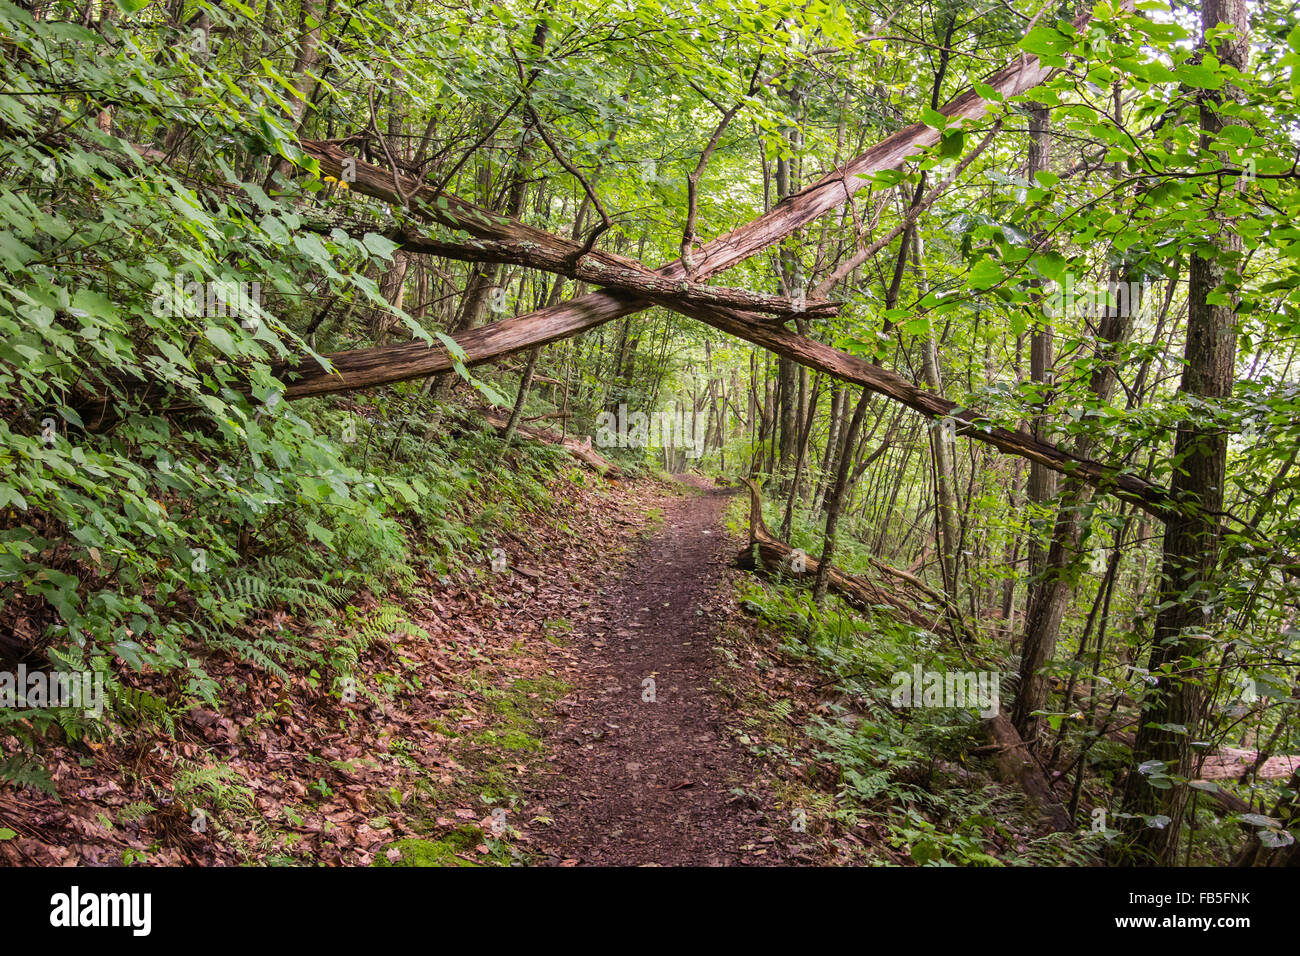 Árboles caídos inclinándose el uno contra el otro espere a caer, formando una condición peligrosa para excursionistas Foto de stock